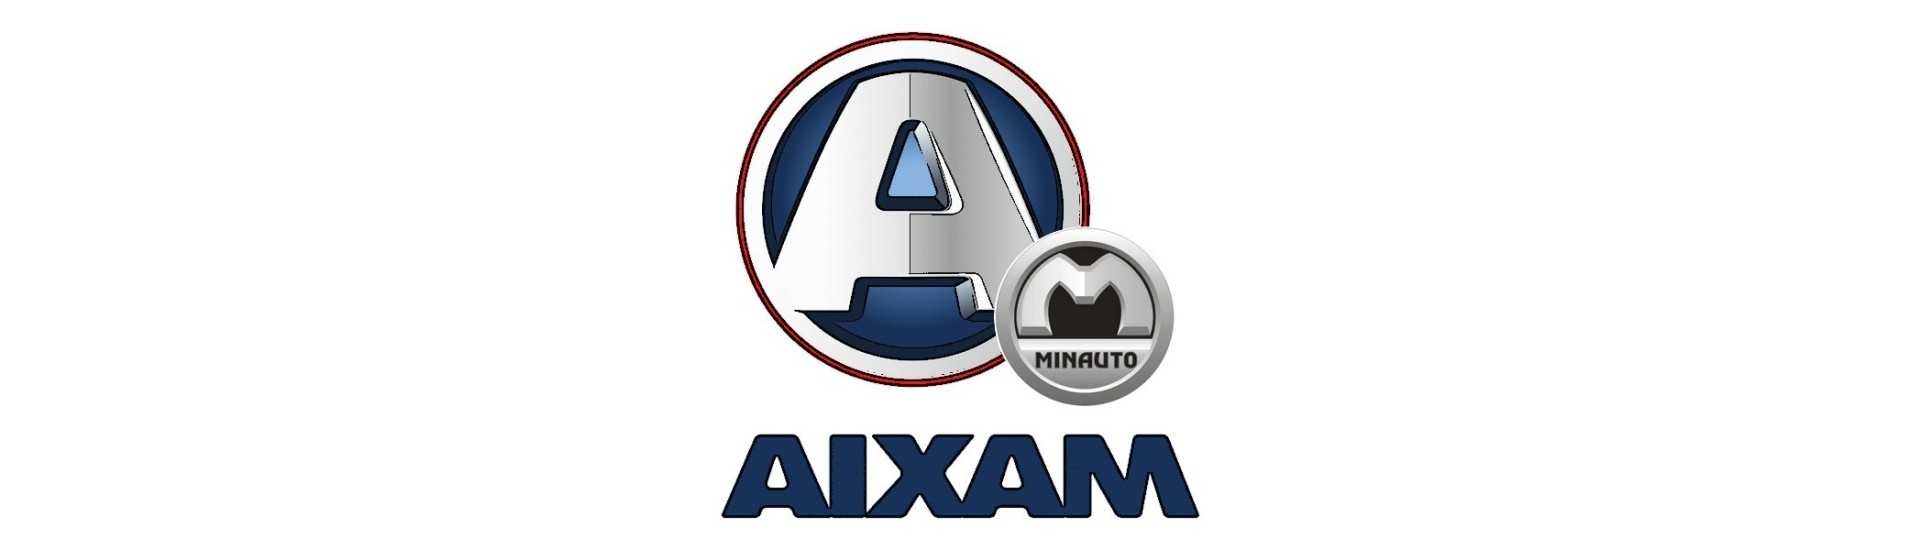 Luftreflektor zum besten Preis Auto ohne Lizenz Aixam Minauto